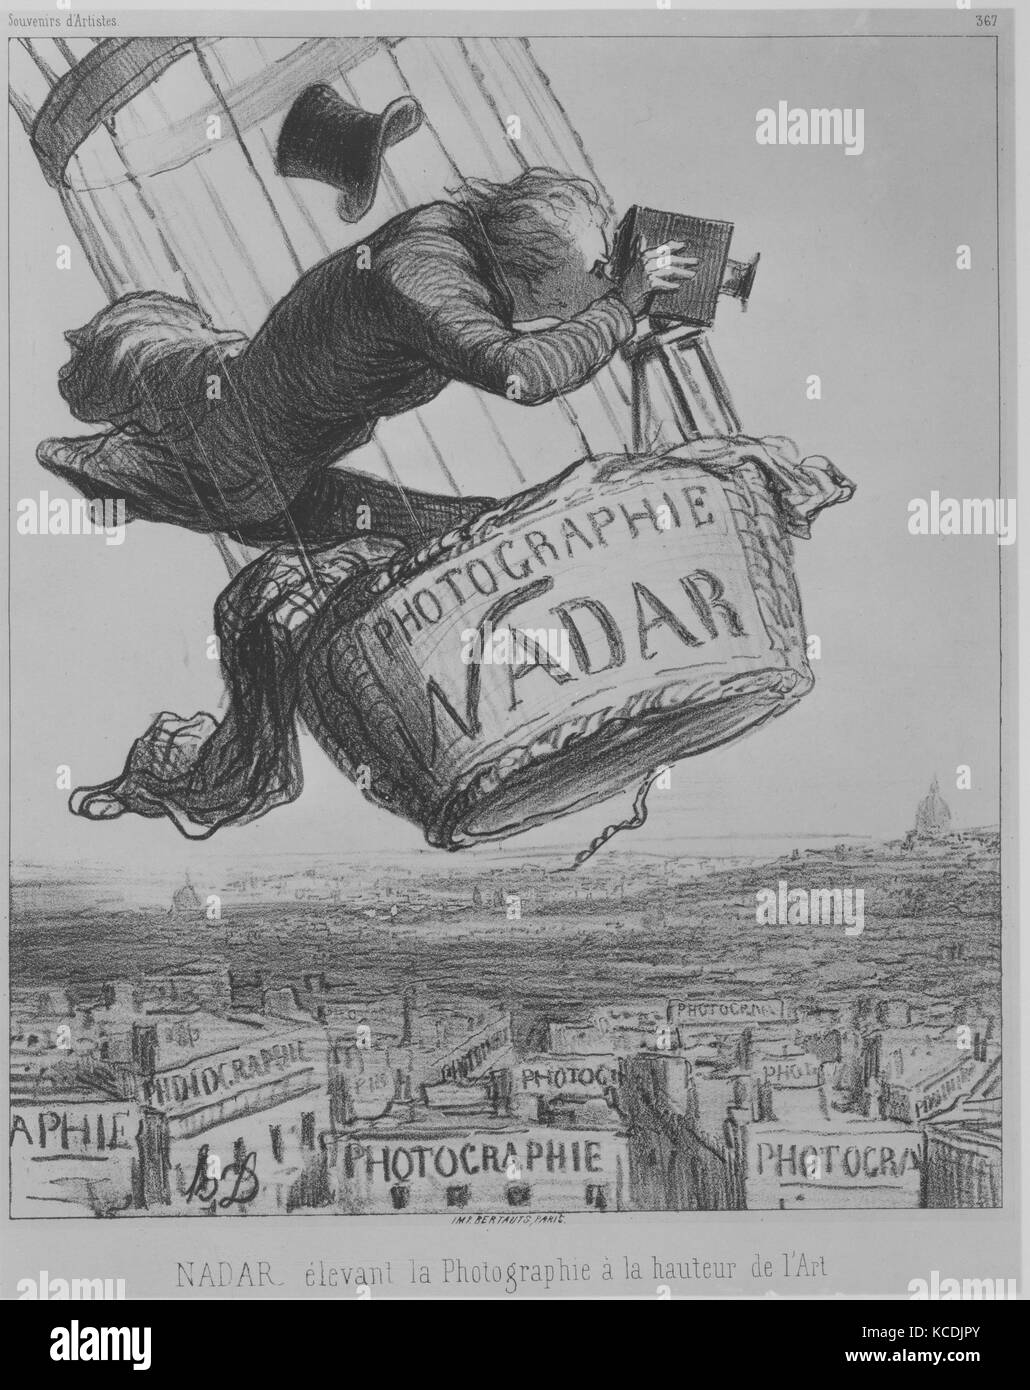 Nadar Élevant la Photographie à la Hauteur de l'Art, Honoré Daumier, May 25, 1862 Stock Photo